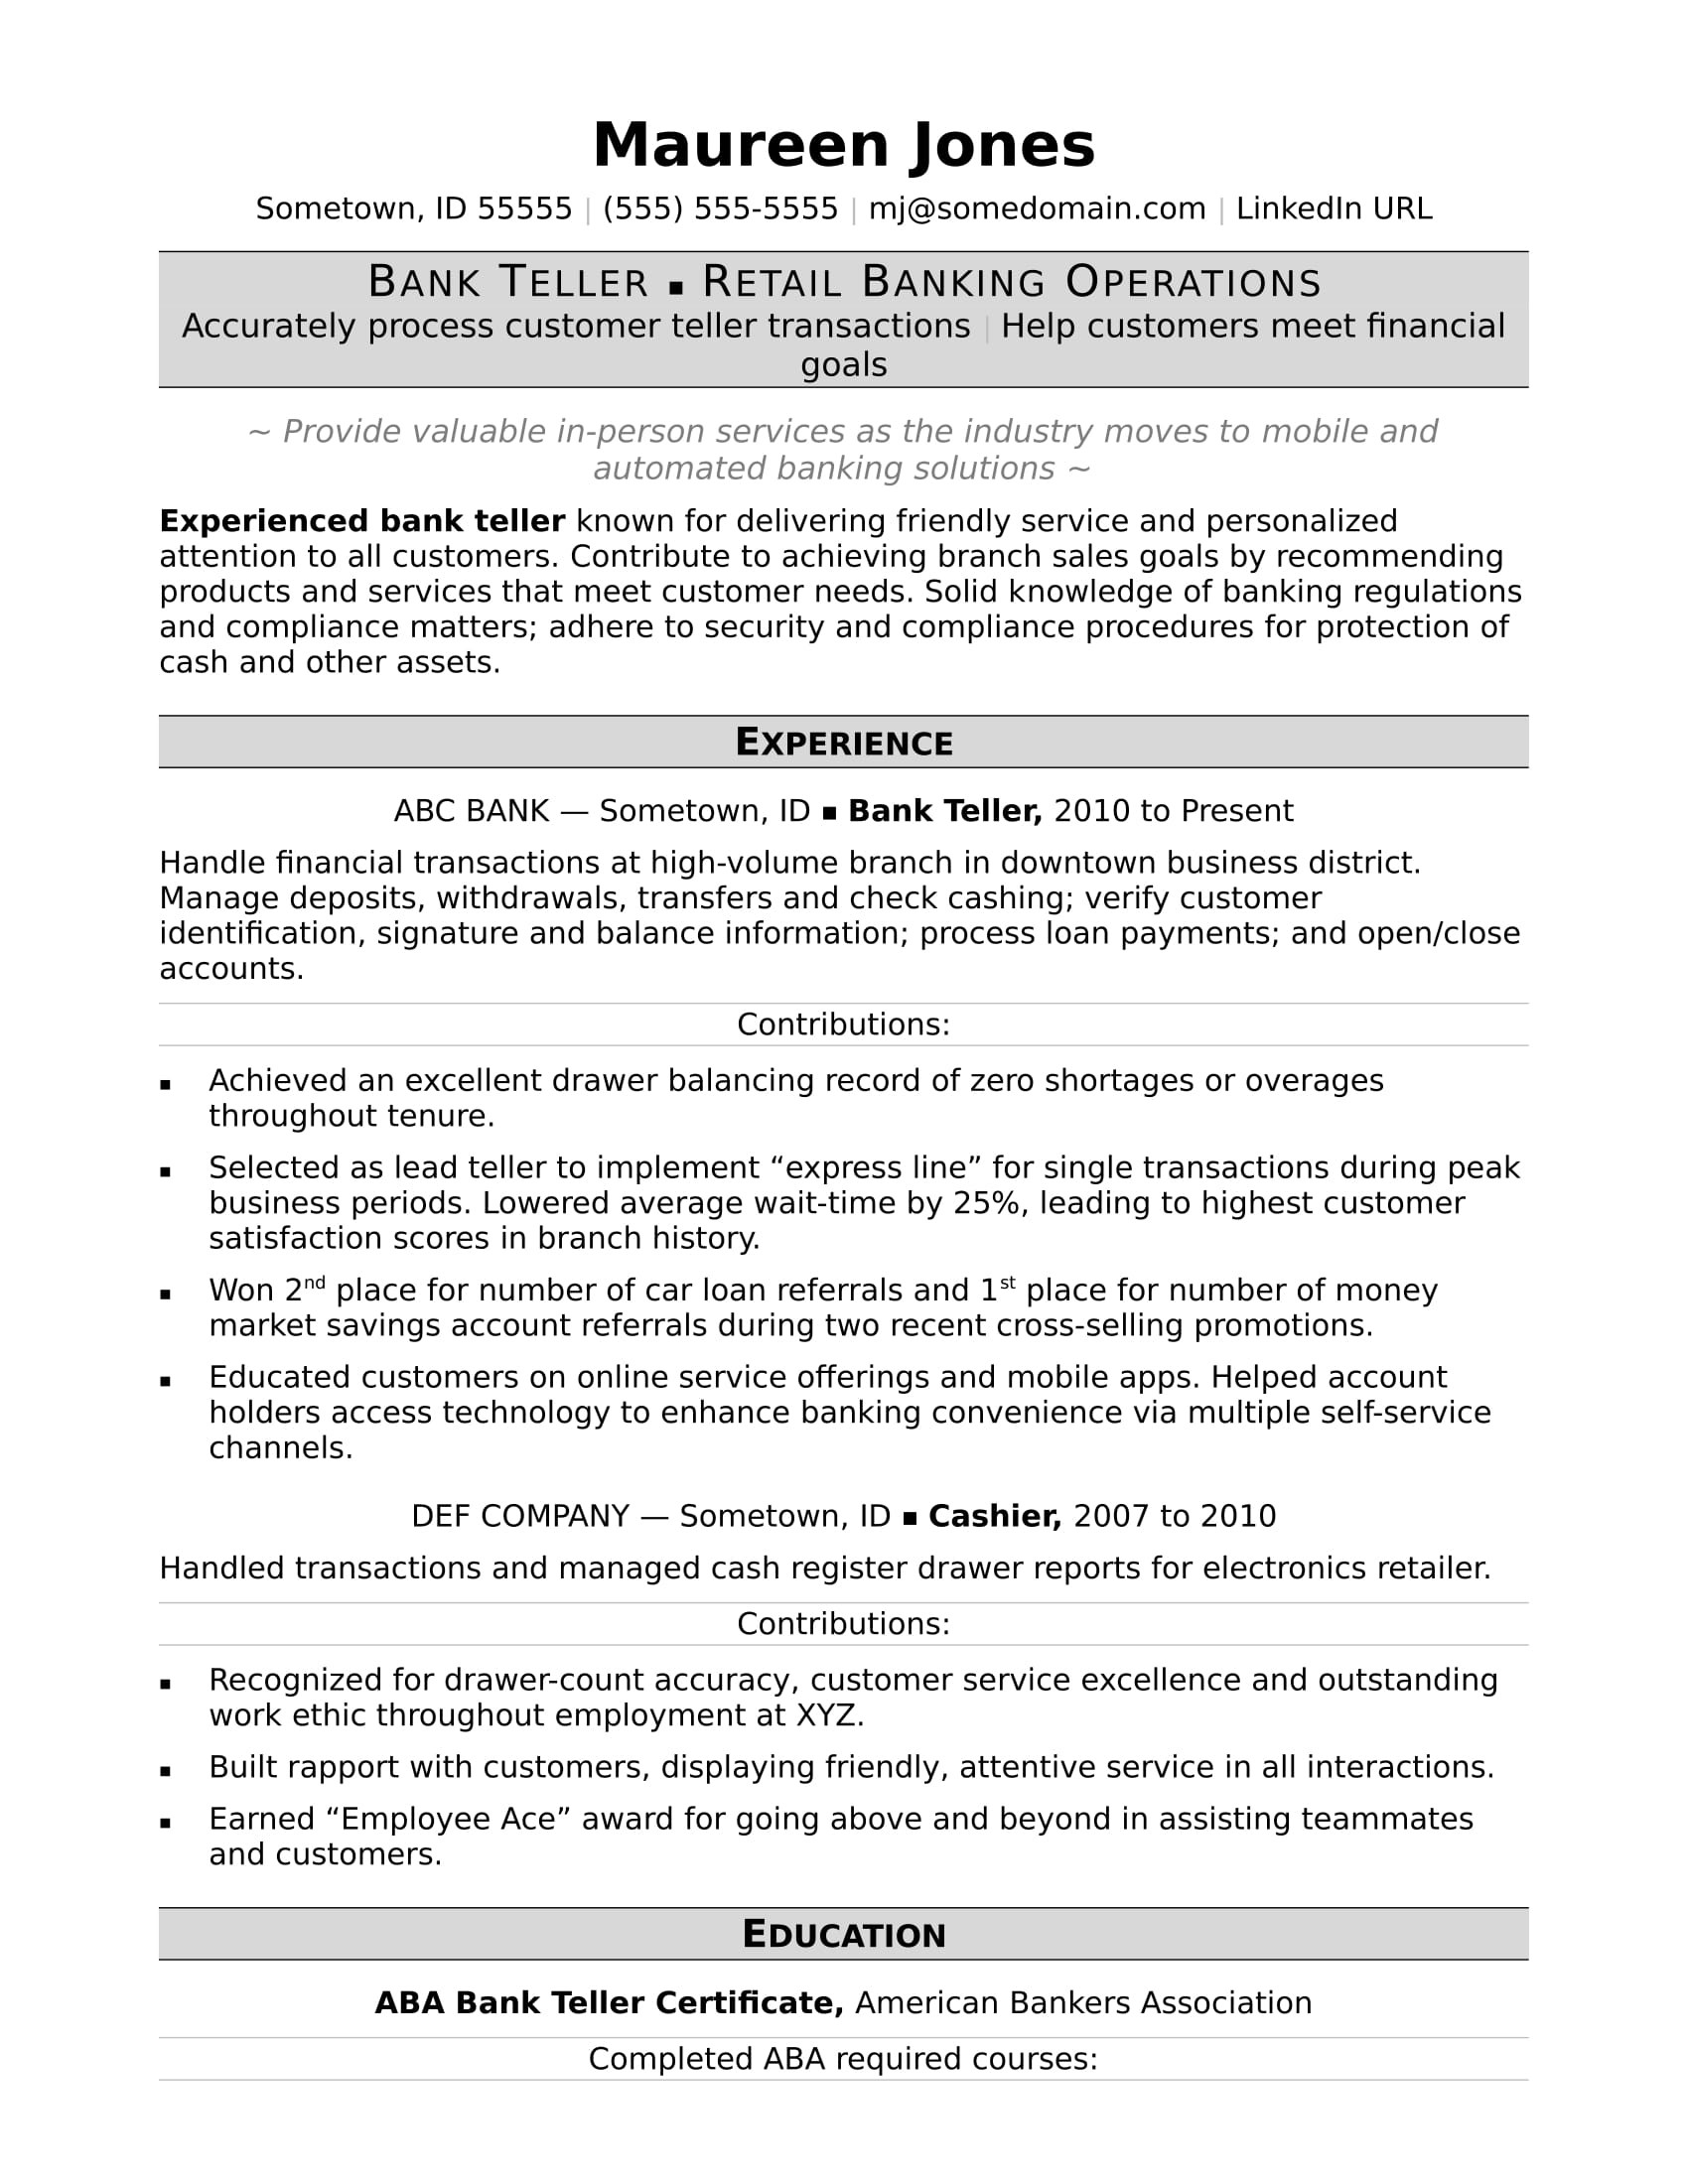 Sample Resume Skills for Bank Teller Bank Teller Resume Monster.com